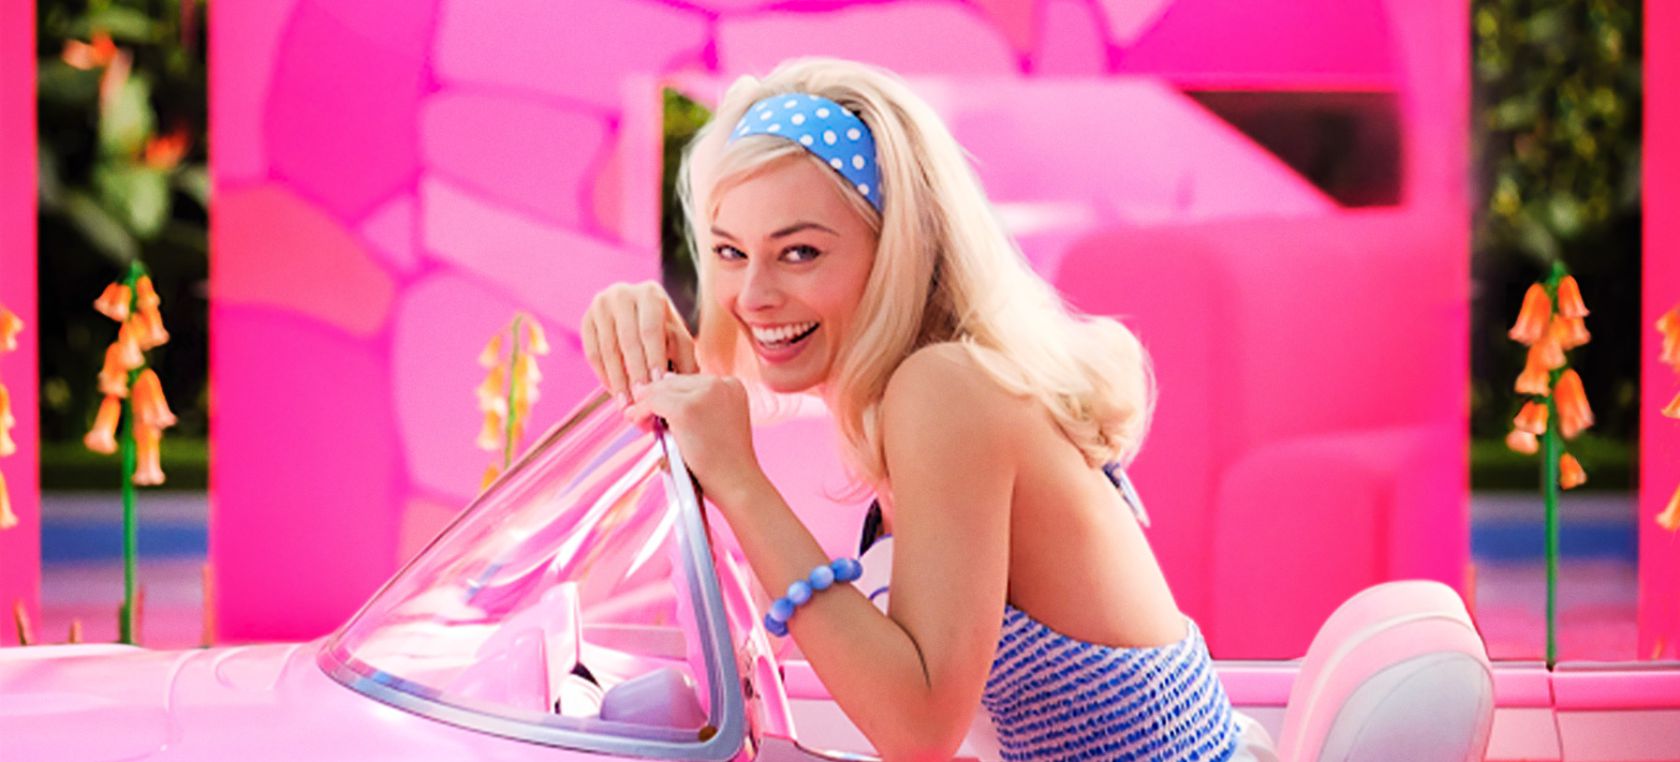 Margot Robbie se deja ver por el rodaje de ‘Barbie’ y vuelve a sorprender con sus looks: “Es una muñeca”